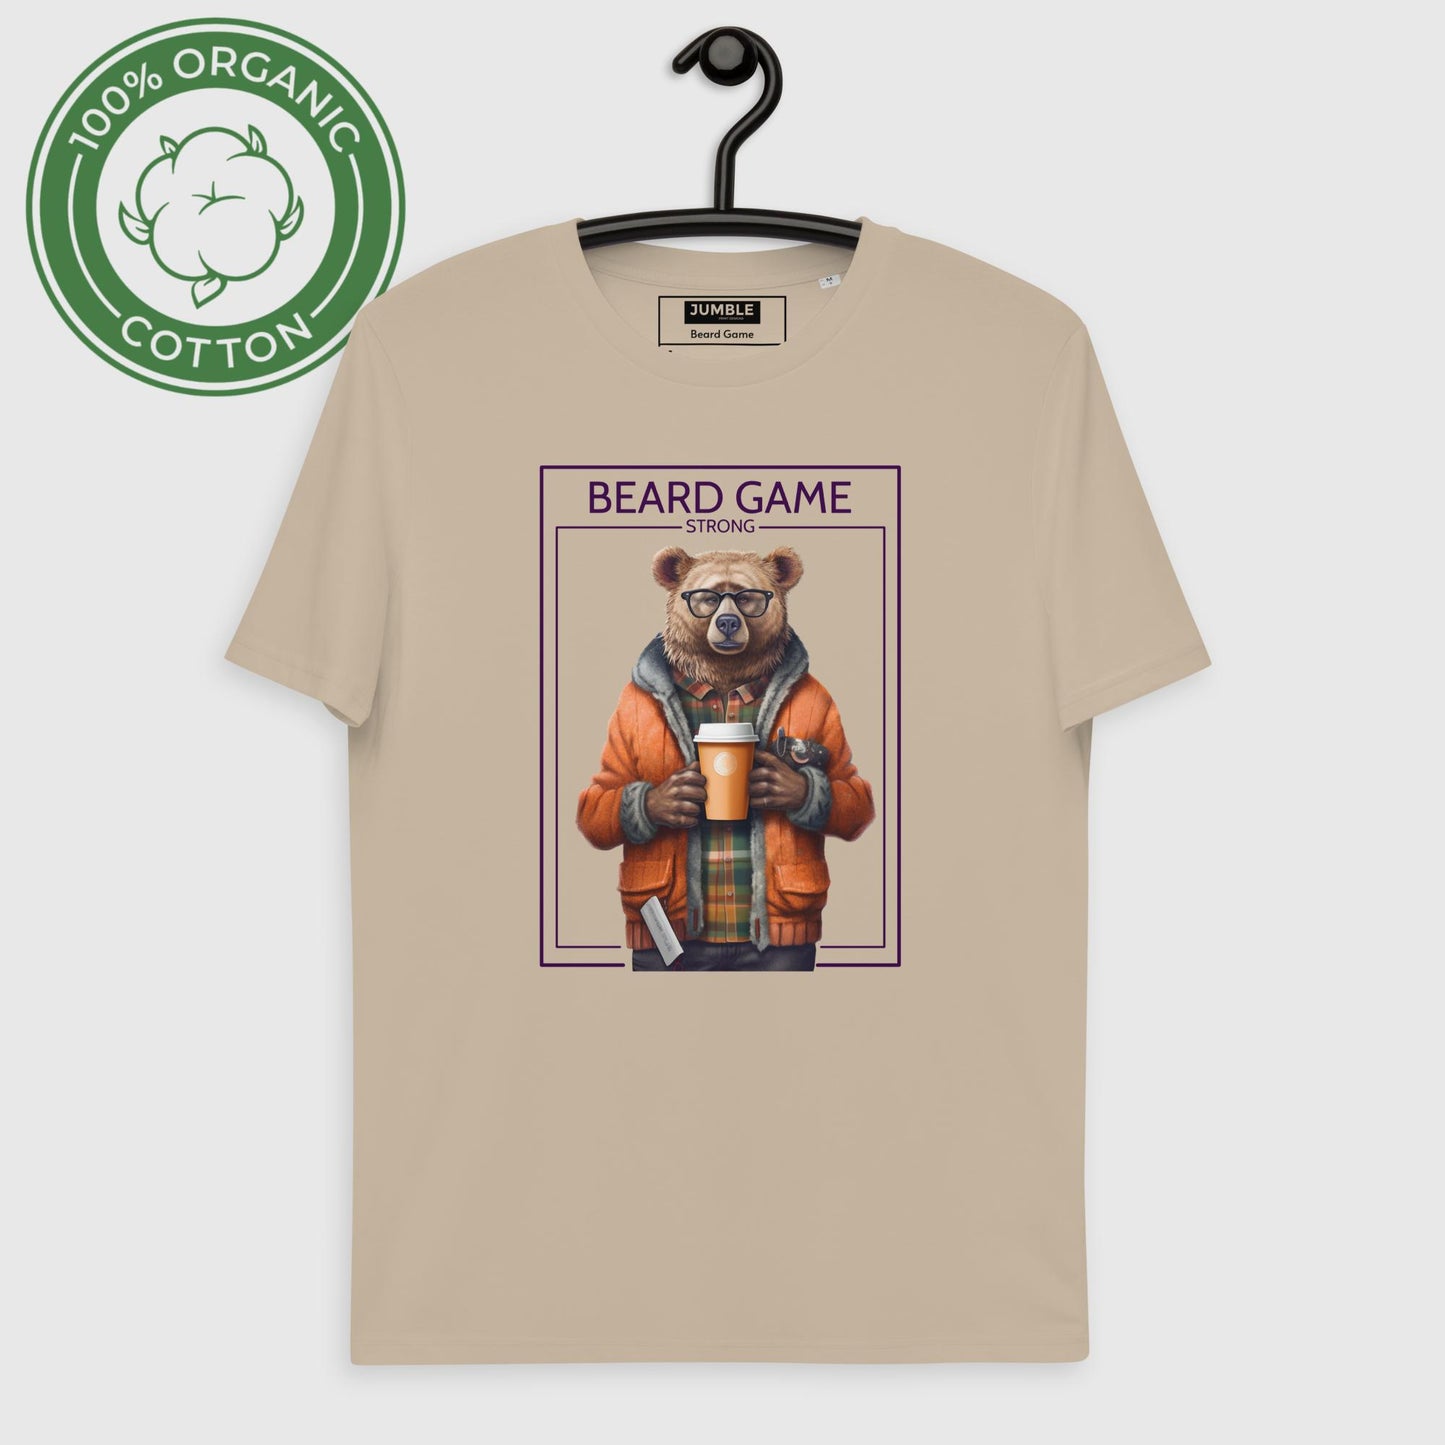 Beard Game Organic Cotton T-shirt in Desert Dust on hanger